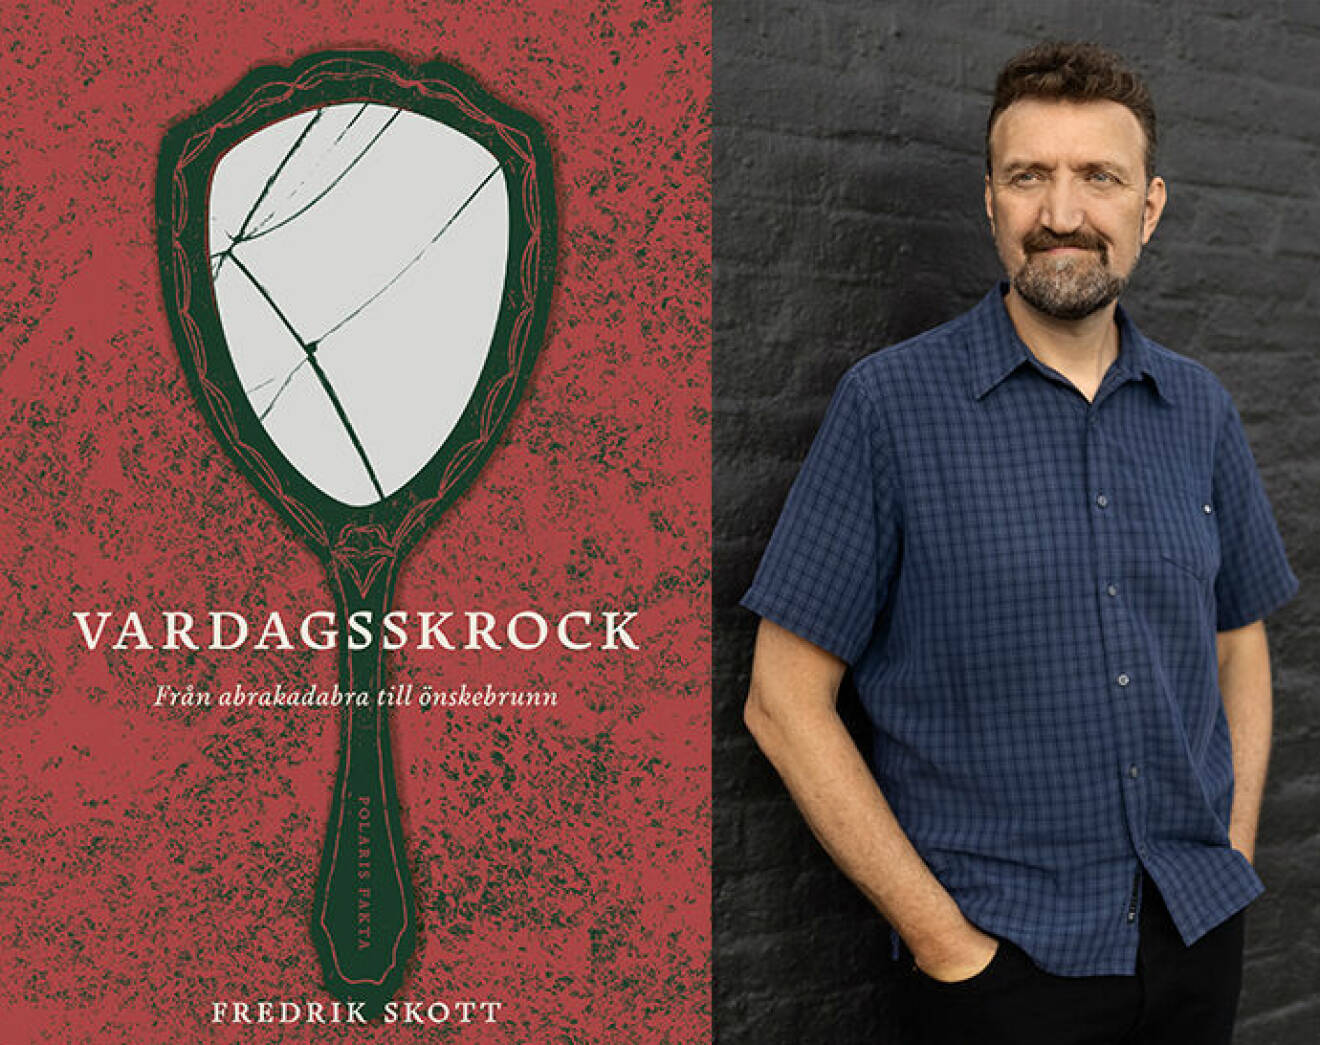 Fredrik Skott har skrivit boken Vardagsskrock från abrakadabra till önskebrunn. På omslaget syns en krossad spegel.